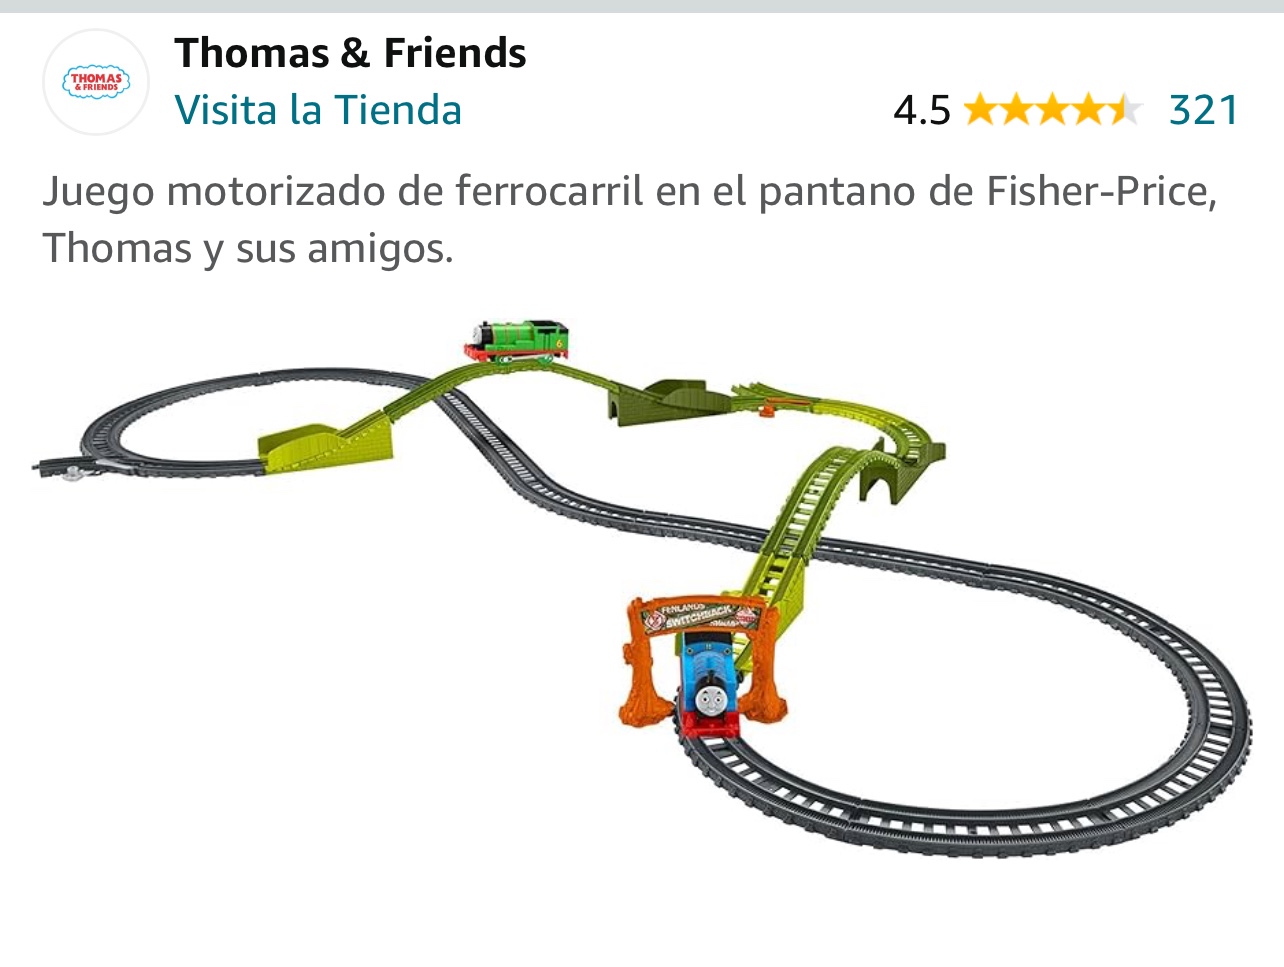 juguetes - Juego motorizado de ferrocarril en el pantano de Fisher-Price. 0